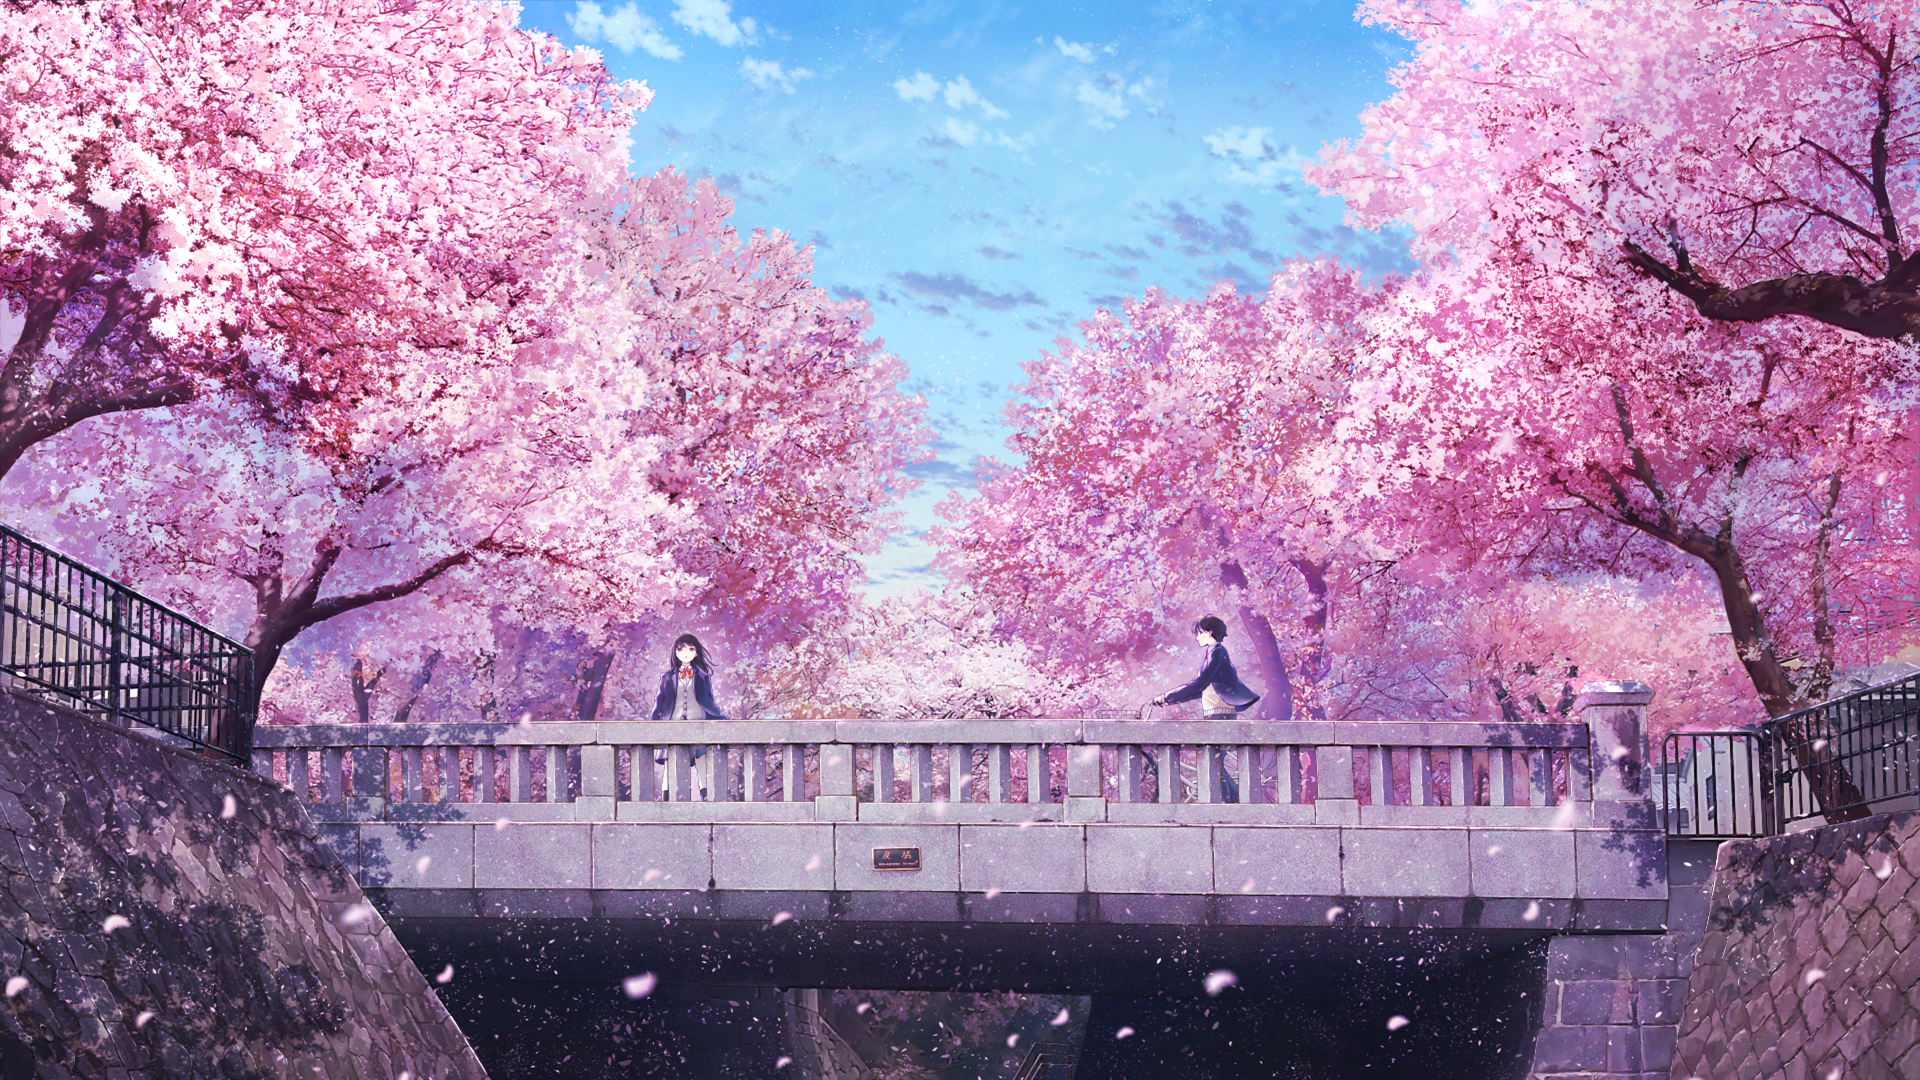 Hình nền anime phong cảnh hoa anh đào tuyệt đẹp